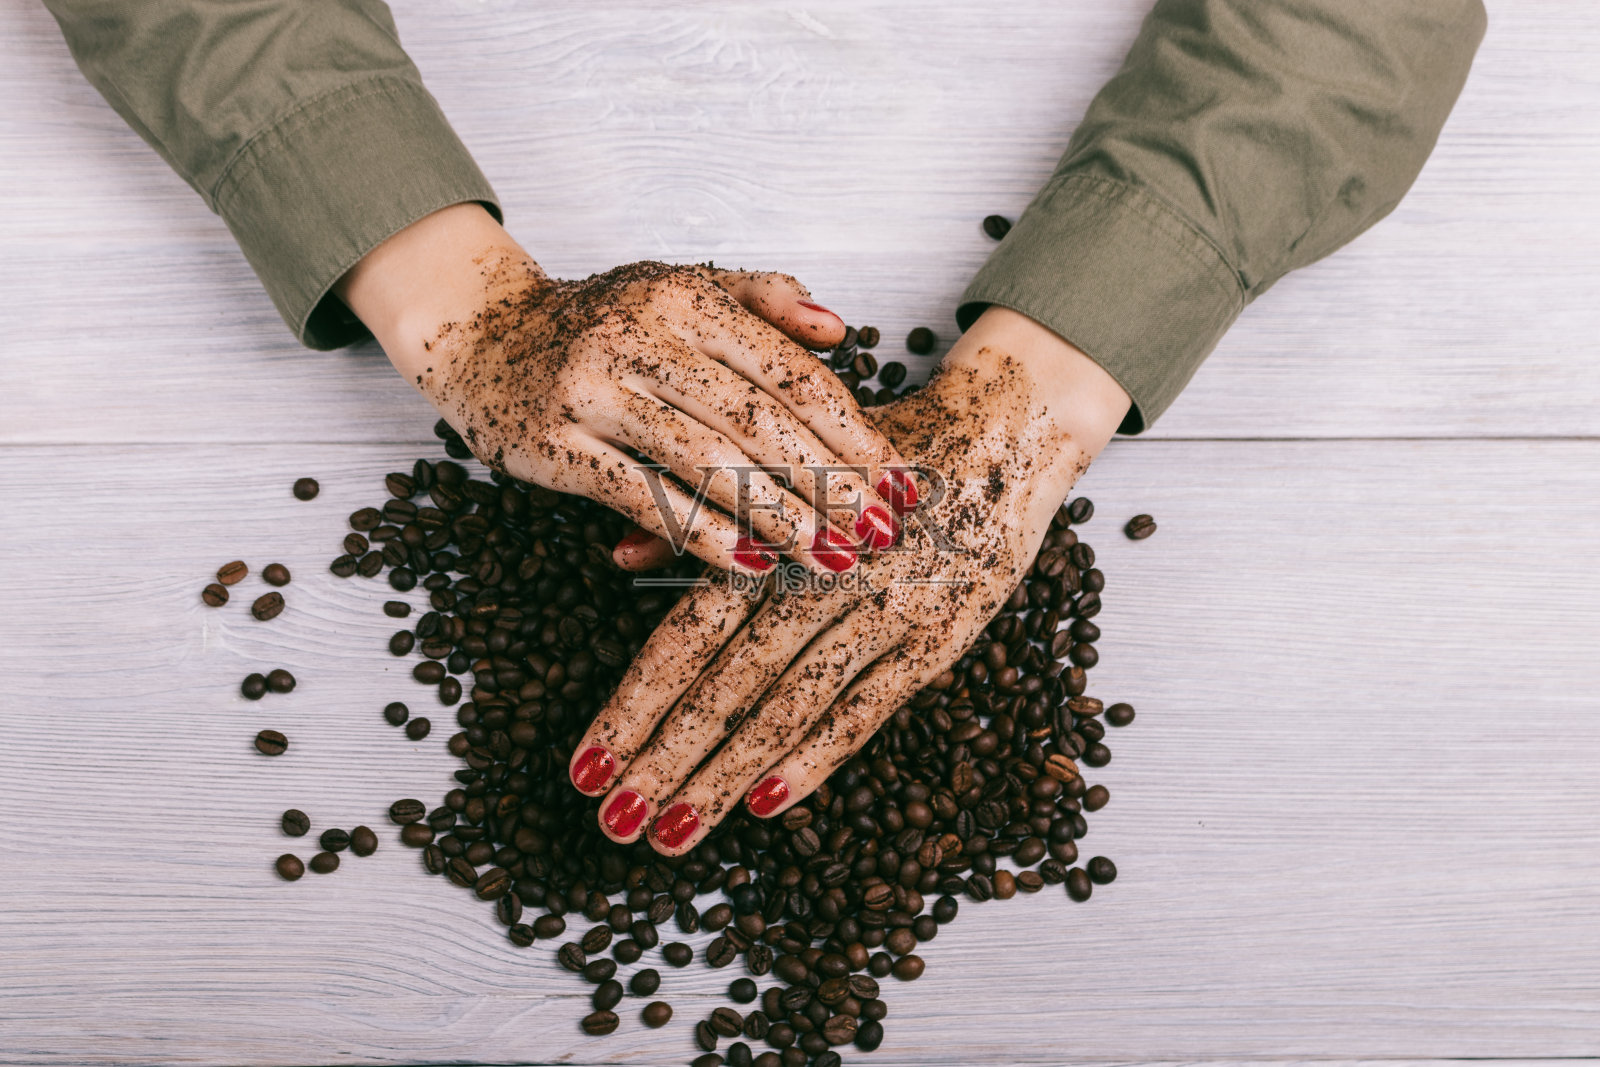 女性用红色指甲油涂抹了咖啡磨砂膏照片摄影图片